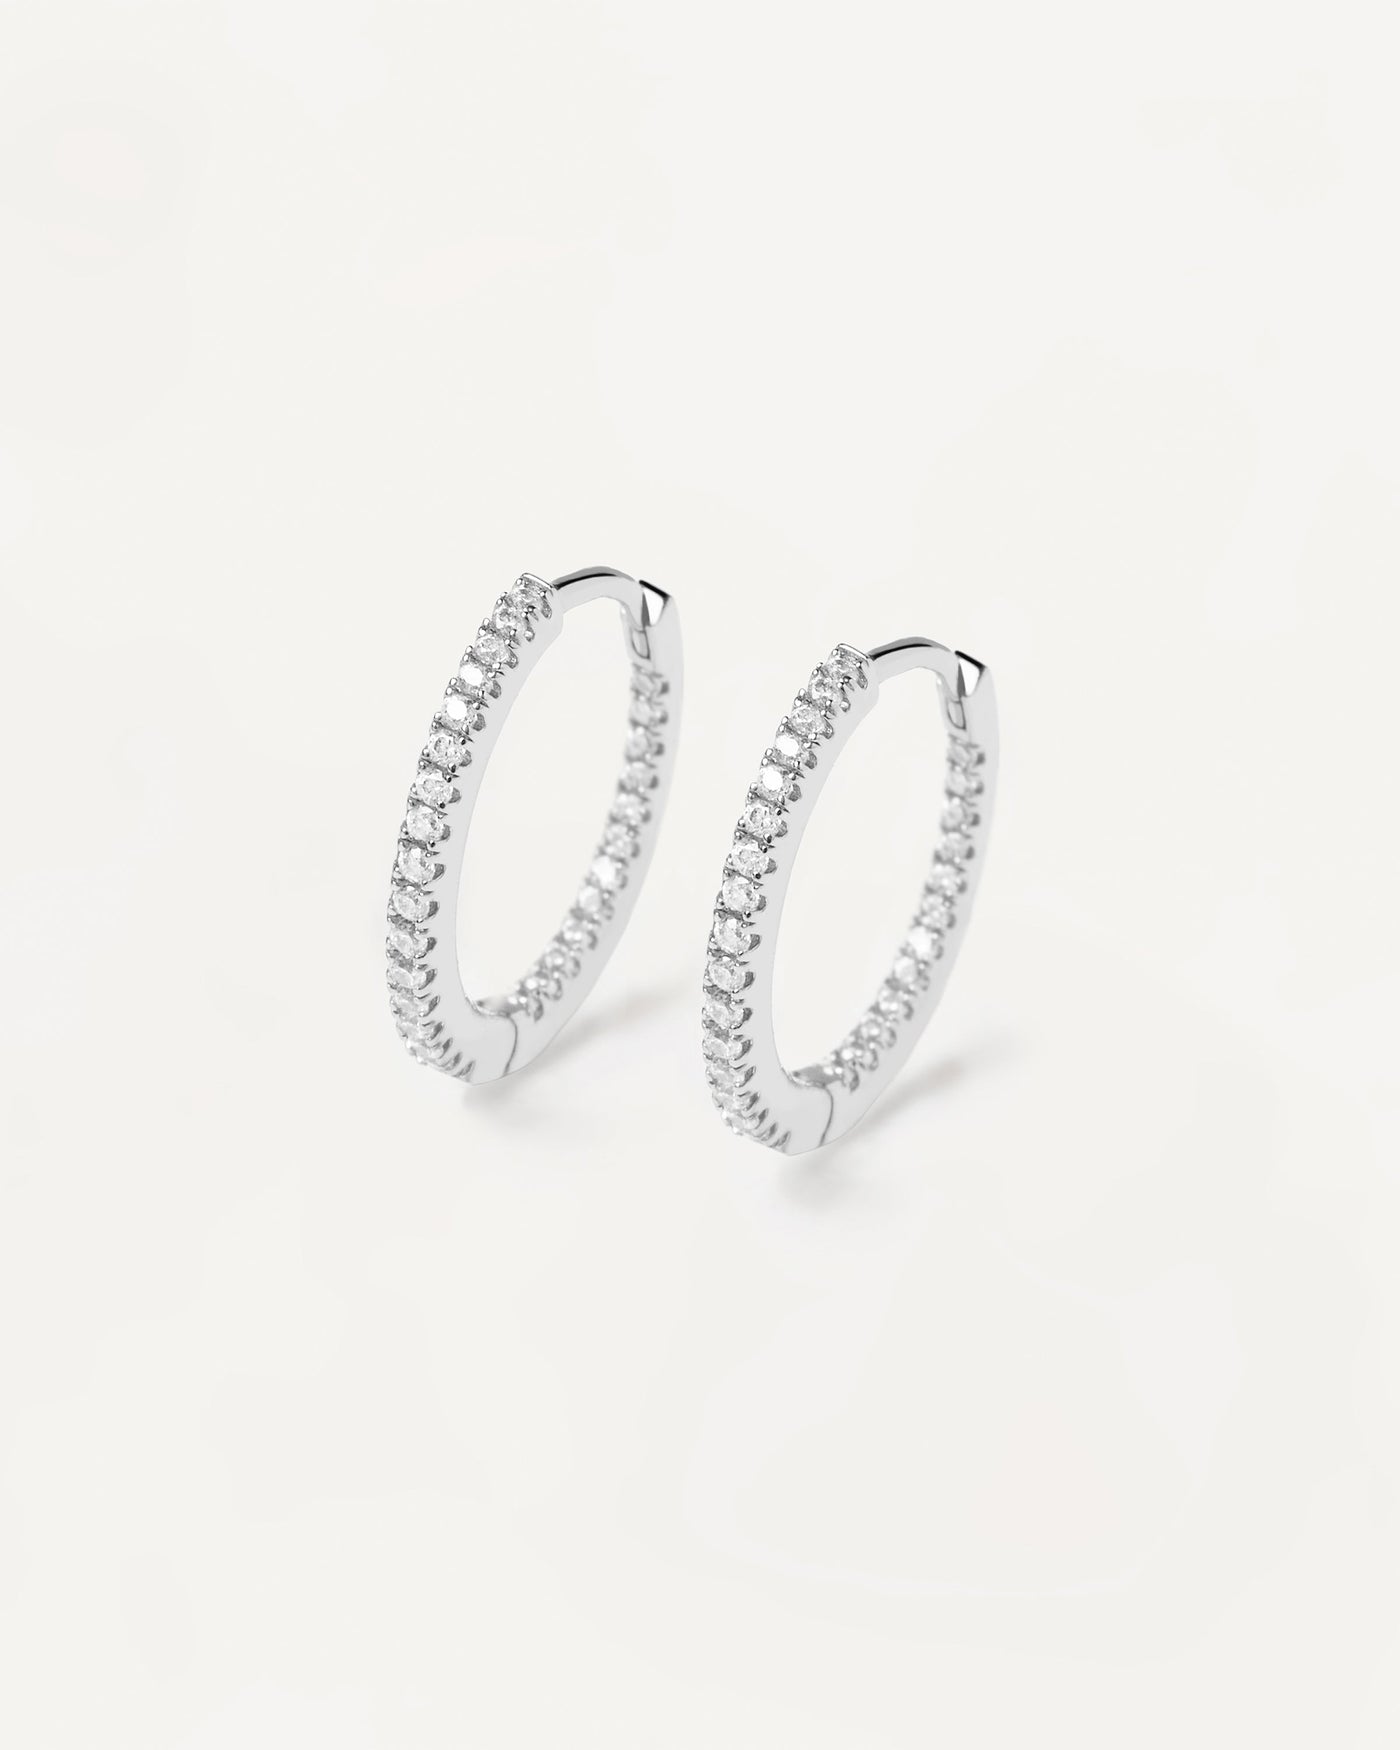 Sterling Silver Hoop Earrings Medium Size For Women